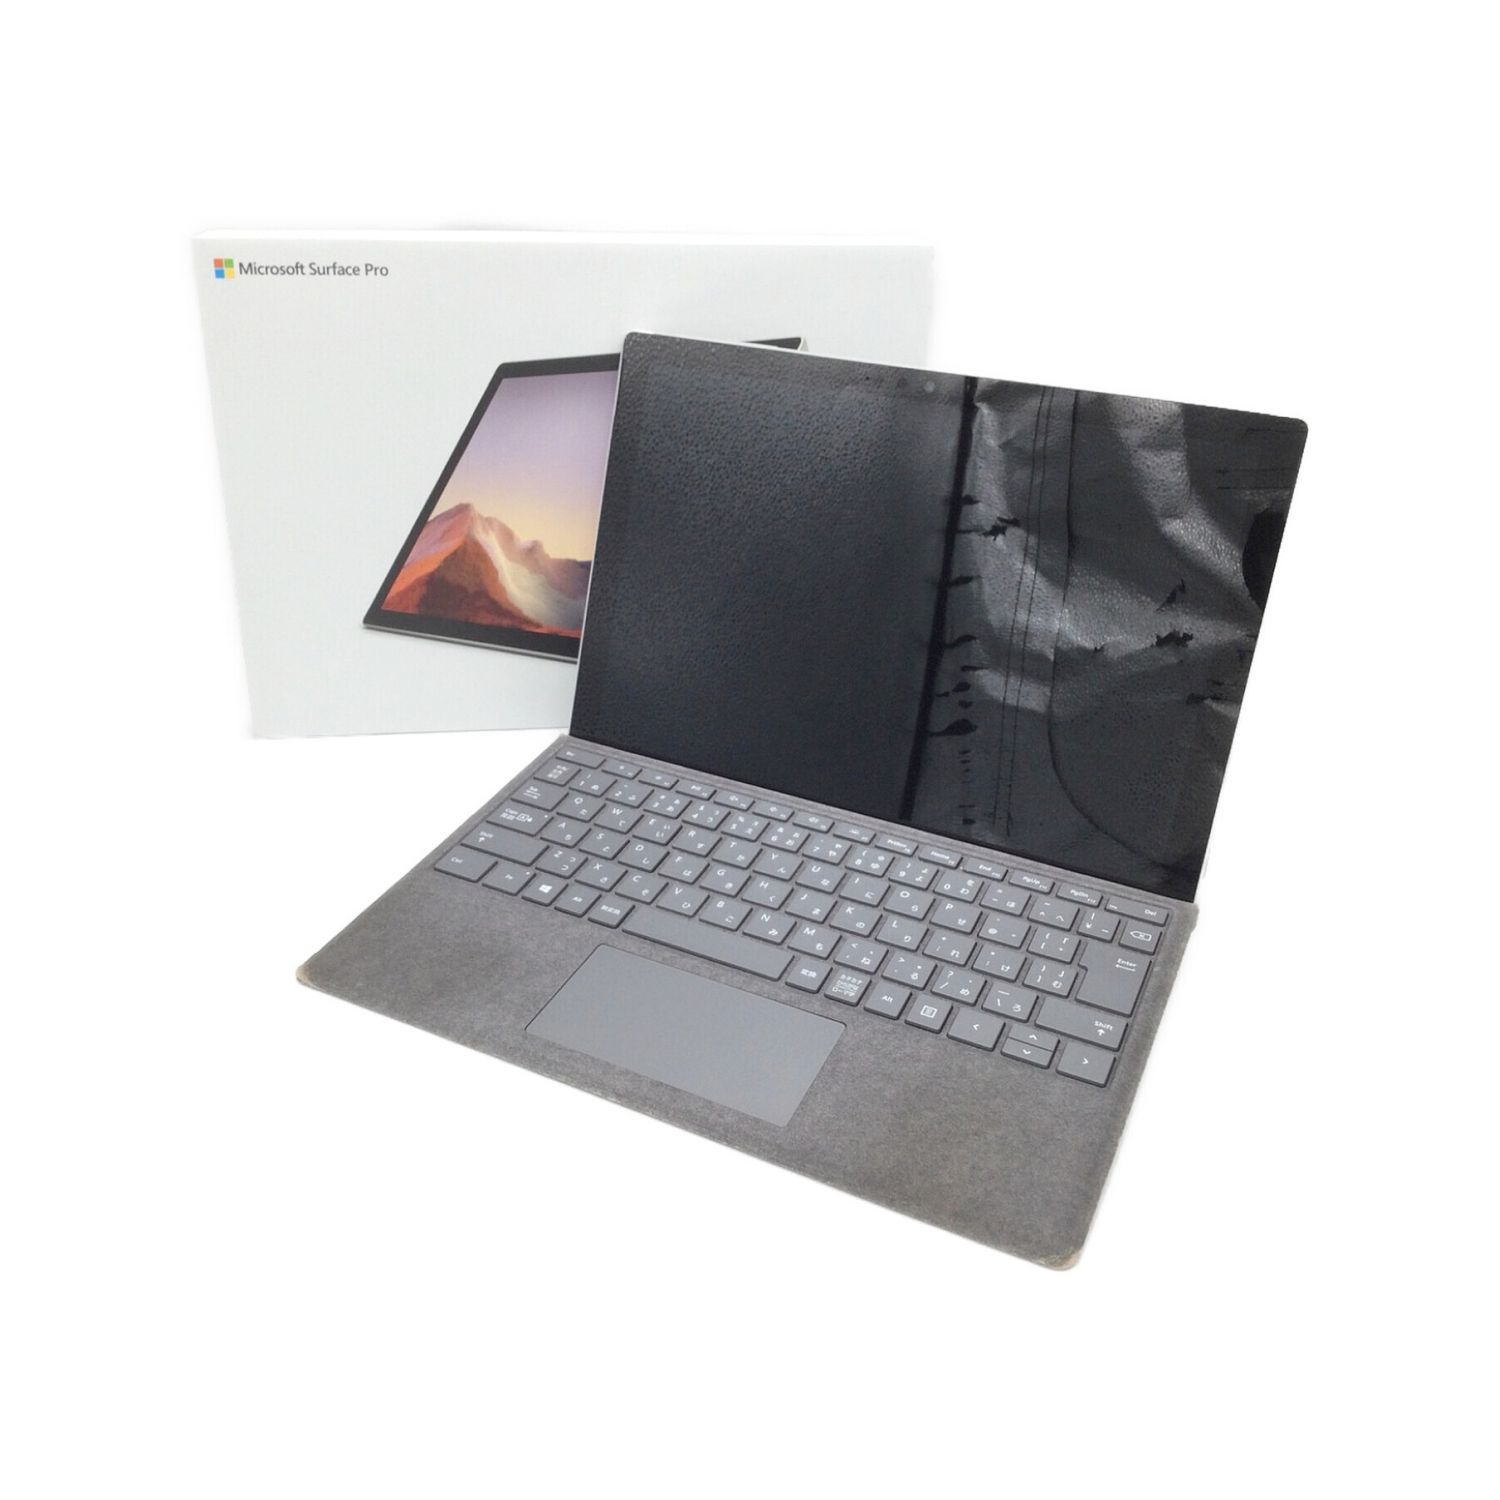 【新品未開封】マイクロソフト Surface Pro 7 PUV-00014